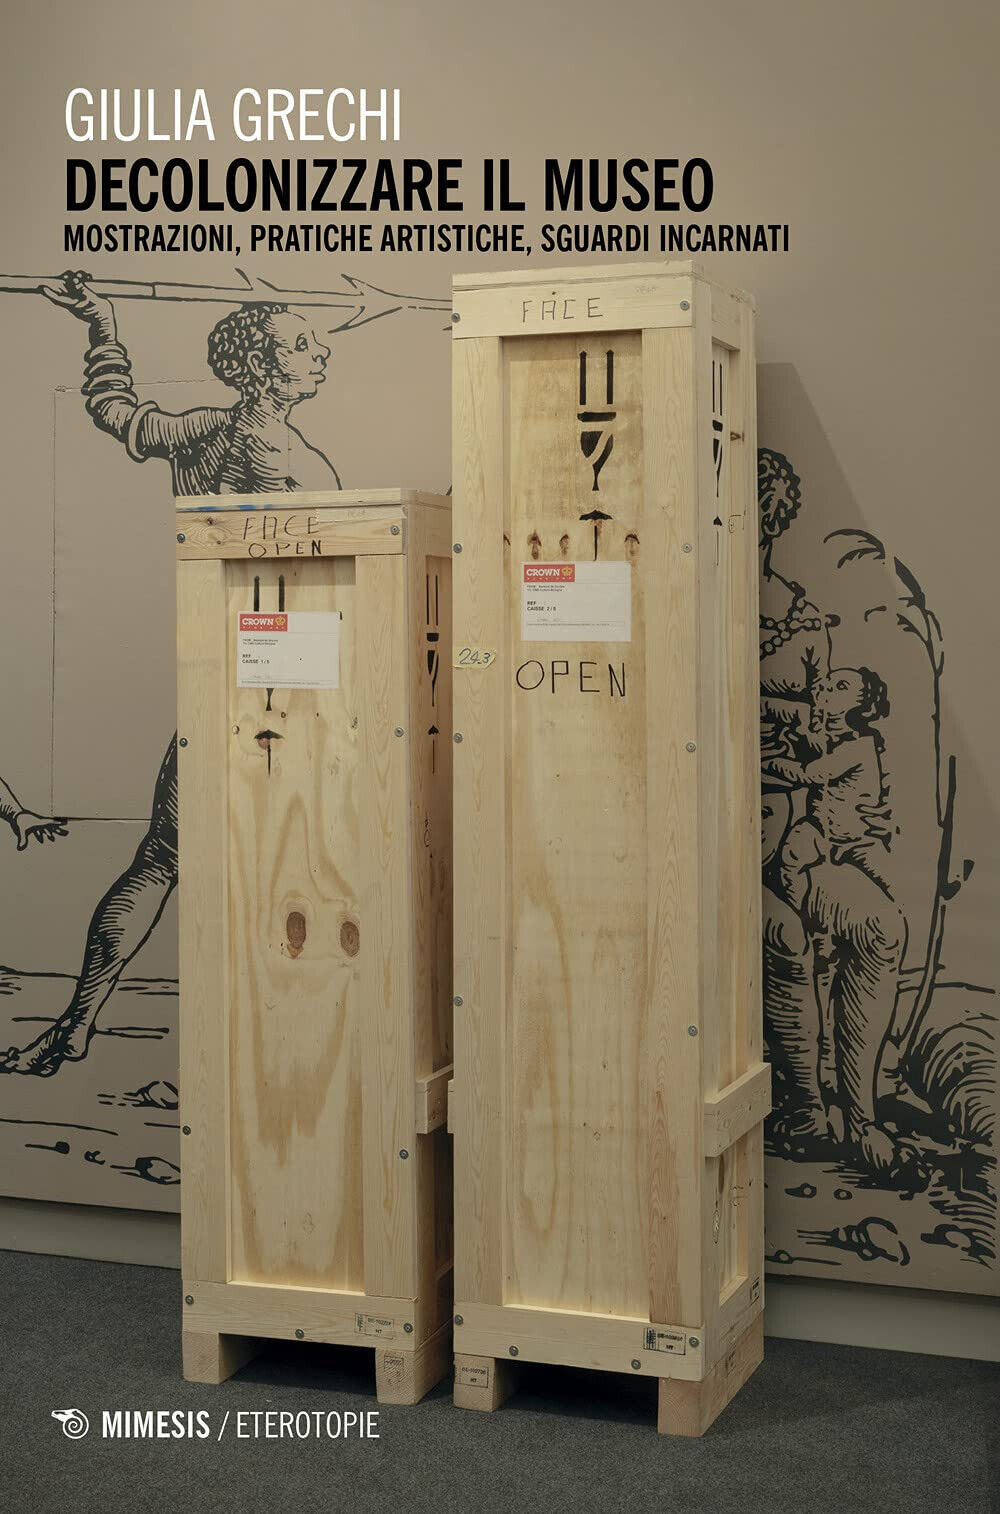 Decolonizzare il museo - Giulia Grechi - Mimesis, 2021